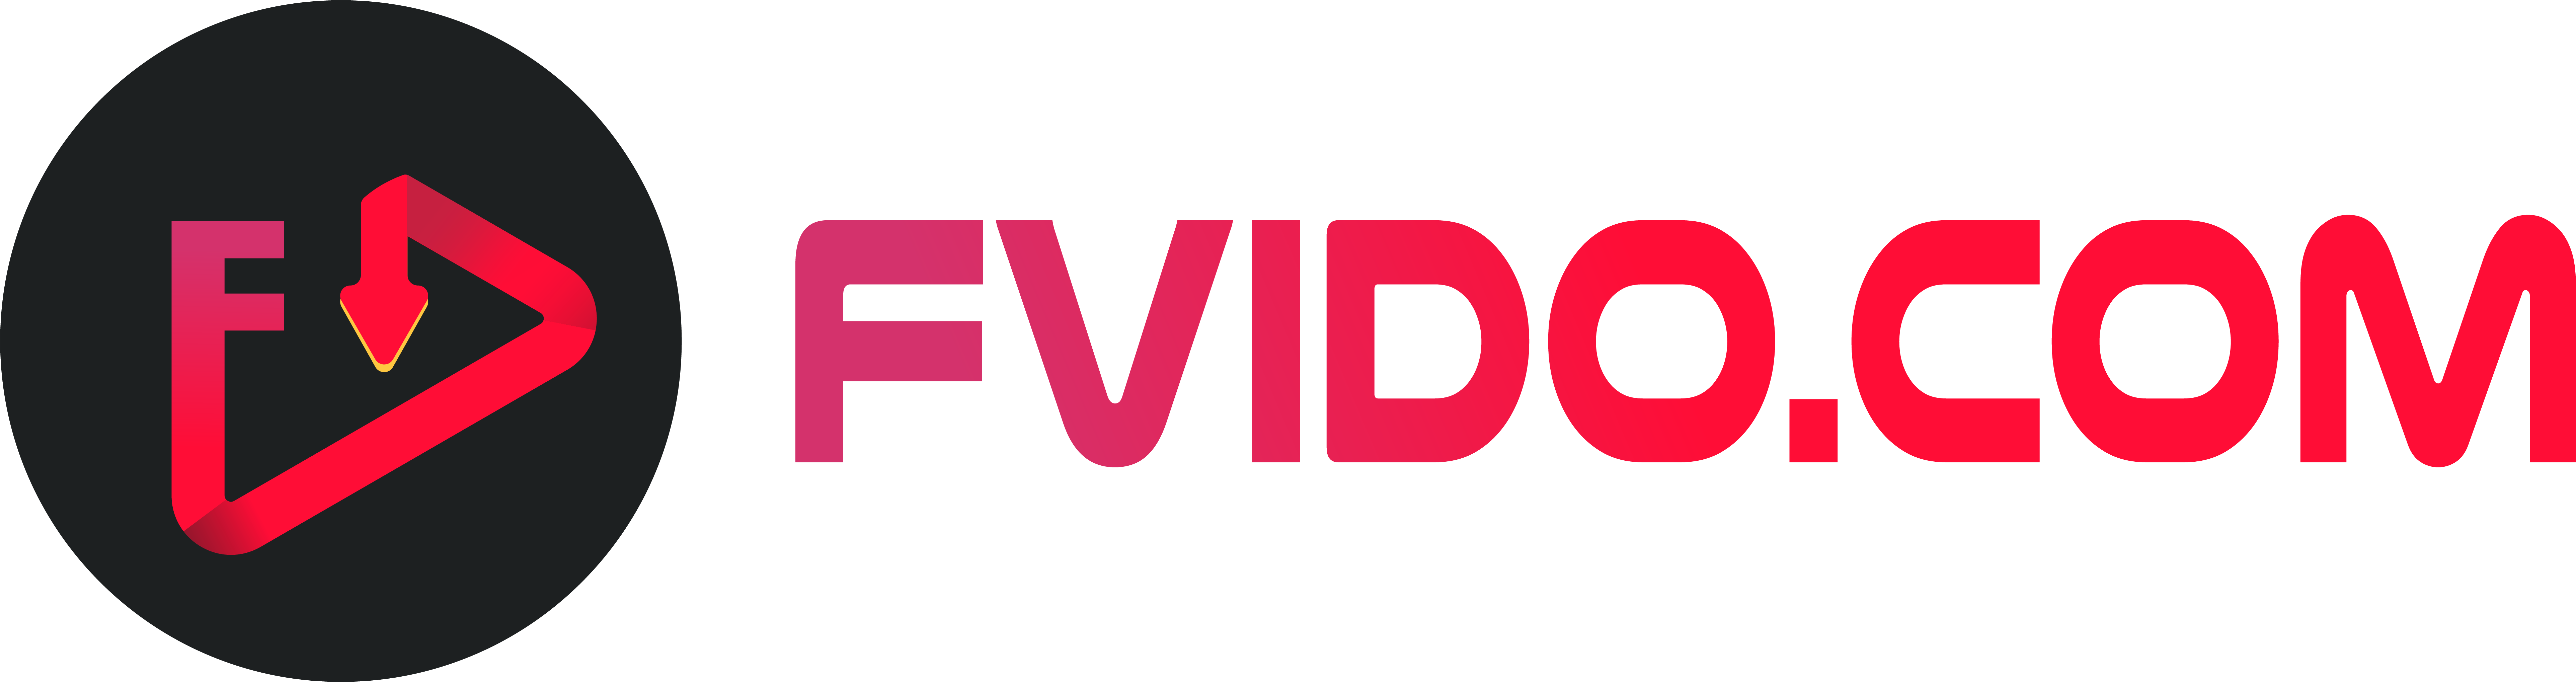 Free Video Downloader Online logo